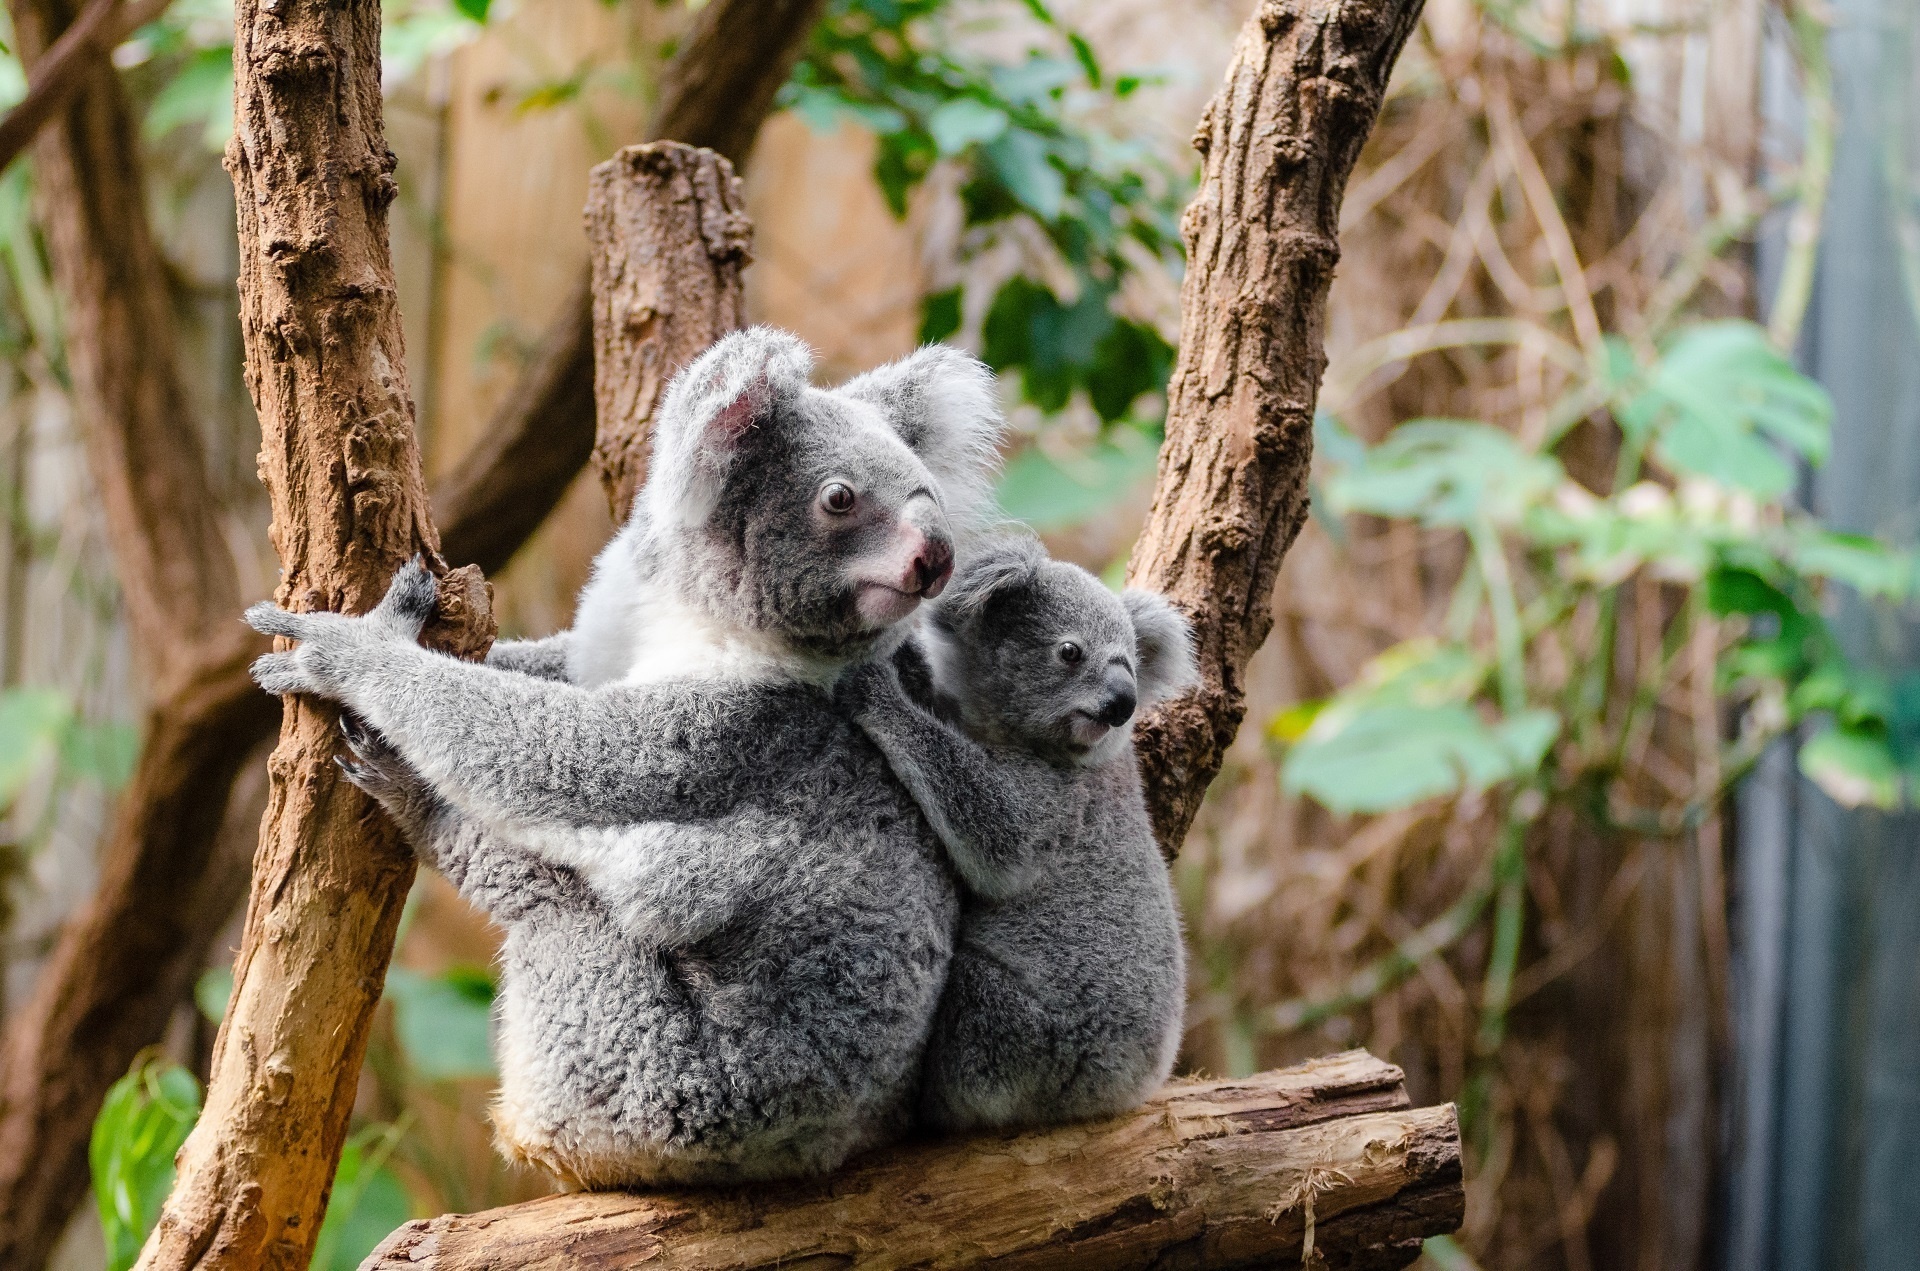 4. Adorable Koala Bear Nails - wide 5